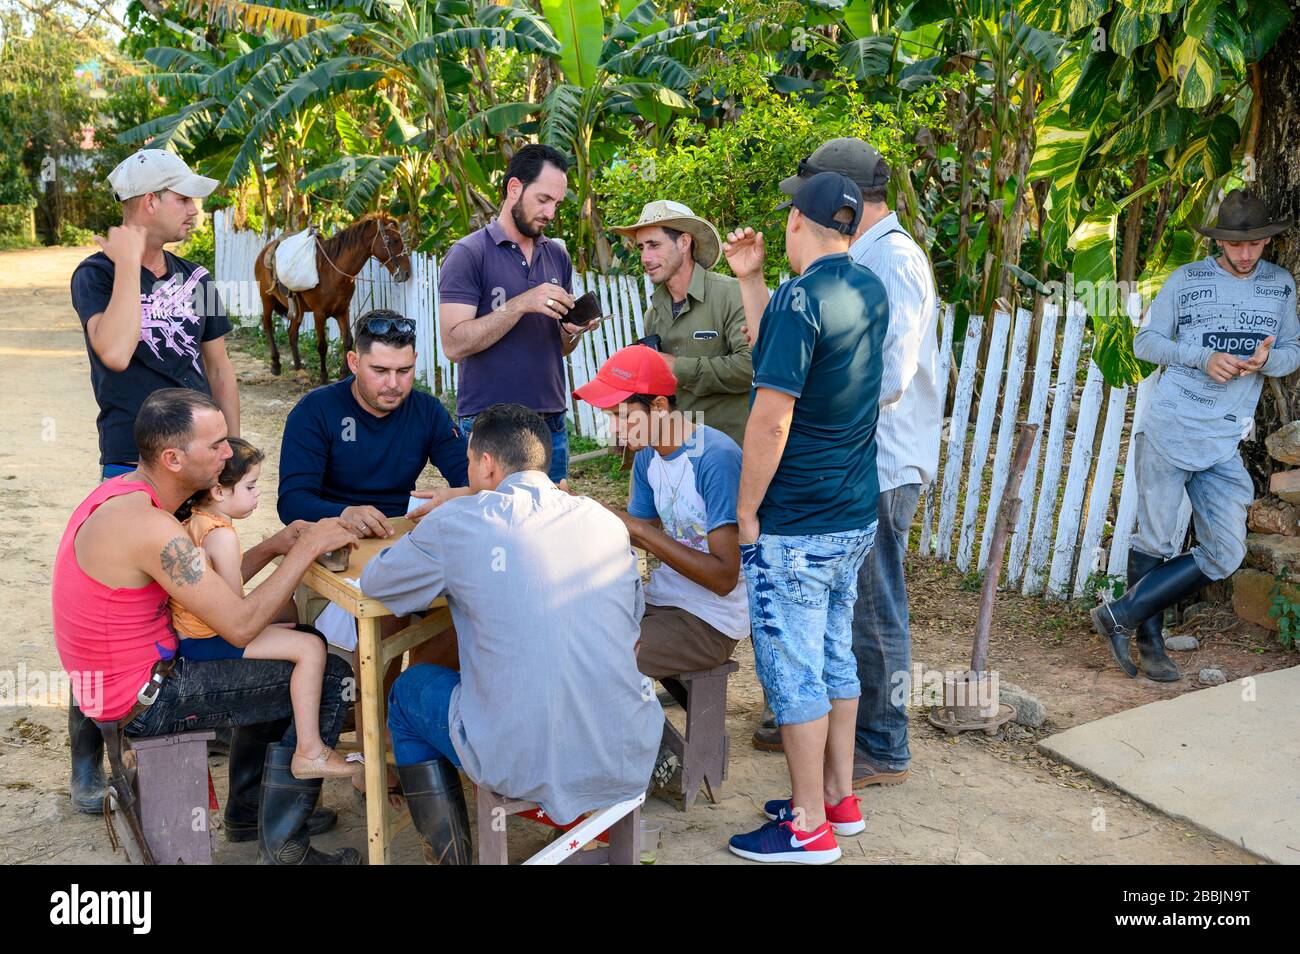 Cowboys spielen Dominos nach der Arbeit, Vinales, Pinar del Rio Provinz, Kuba Stockfoto